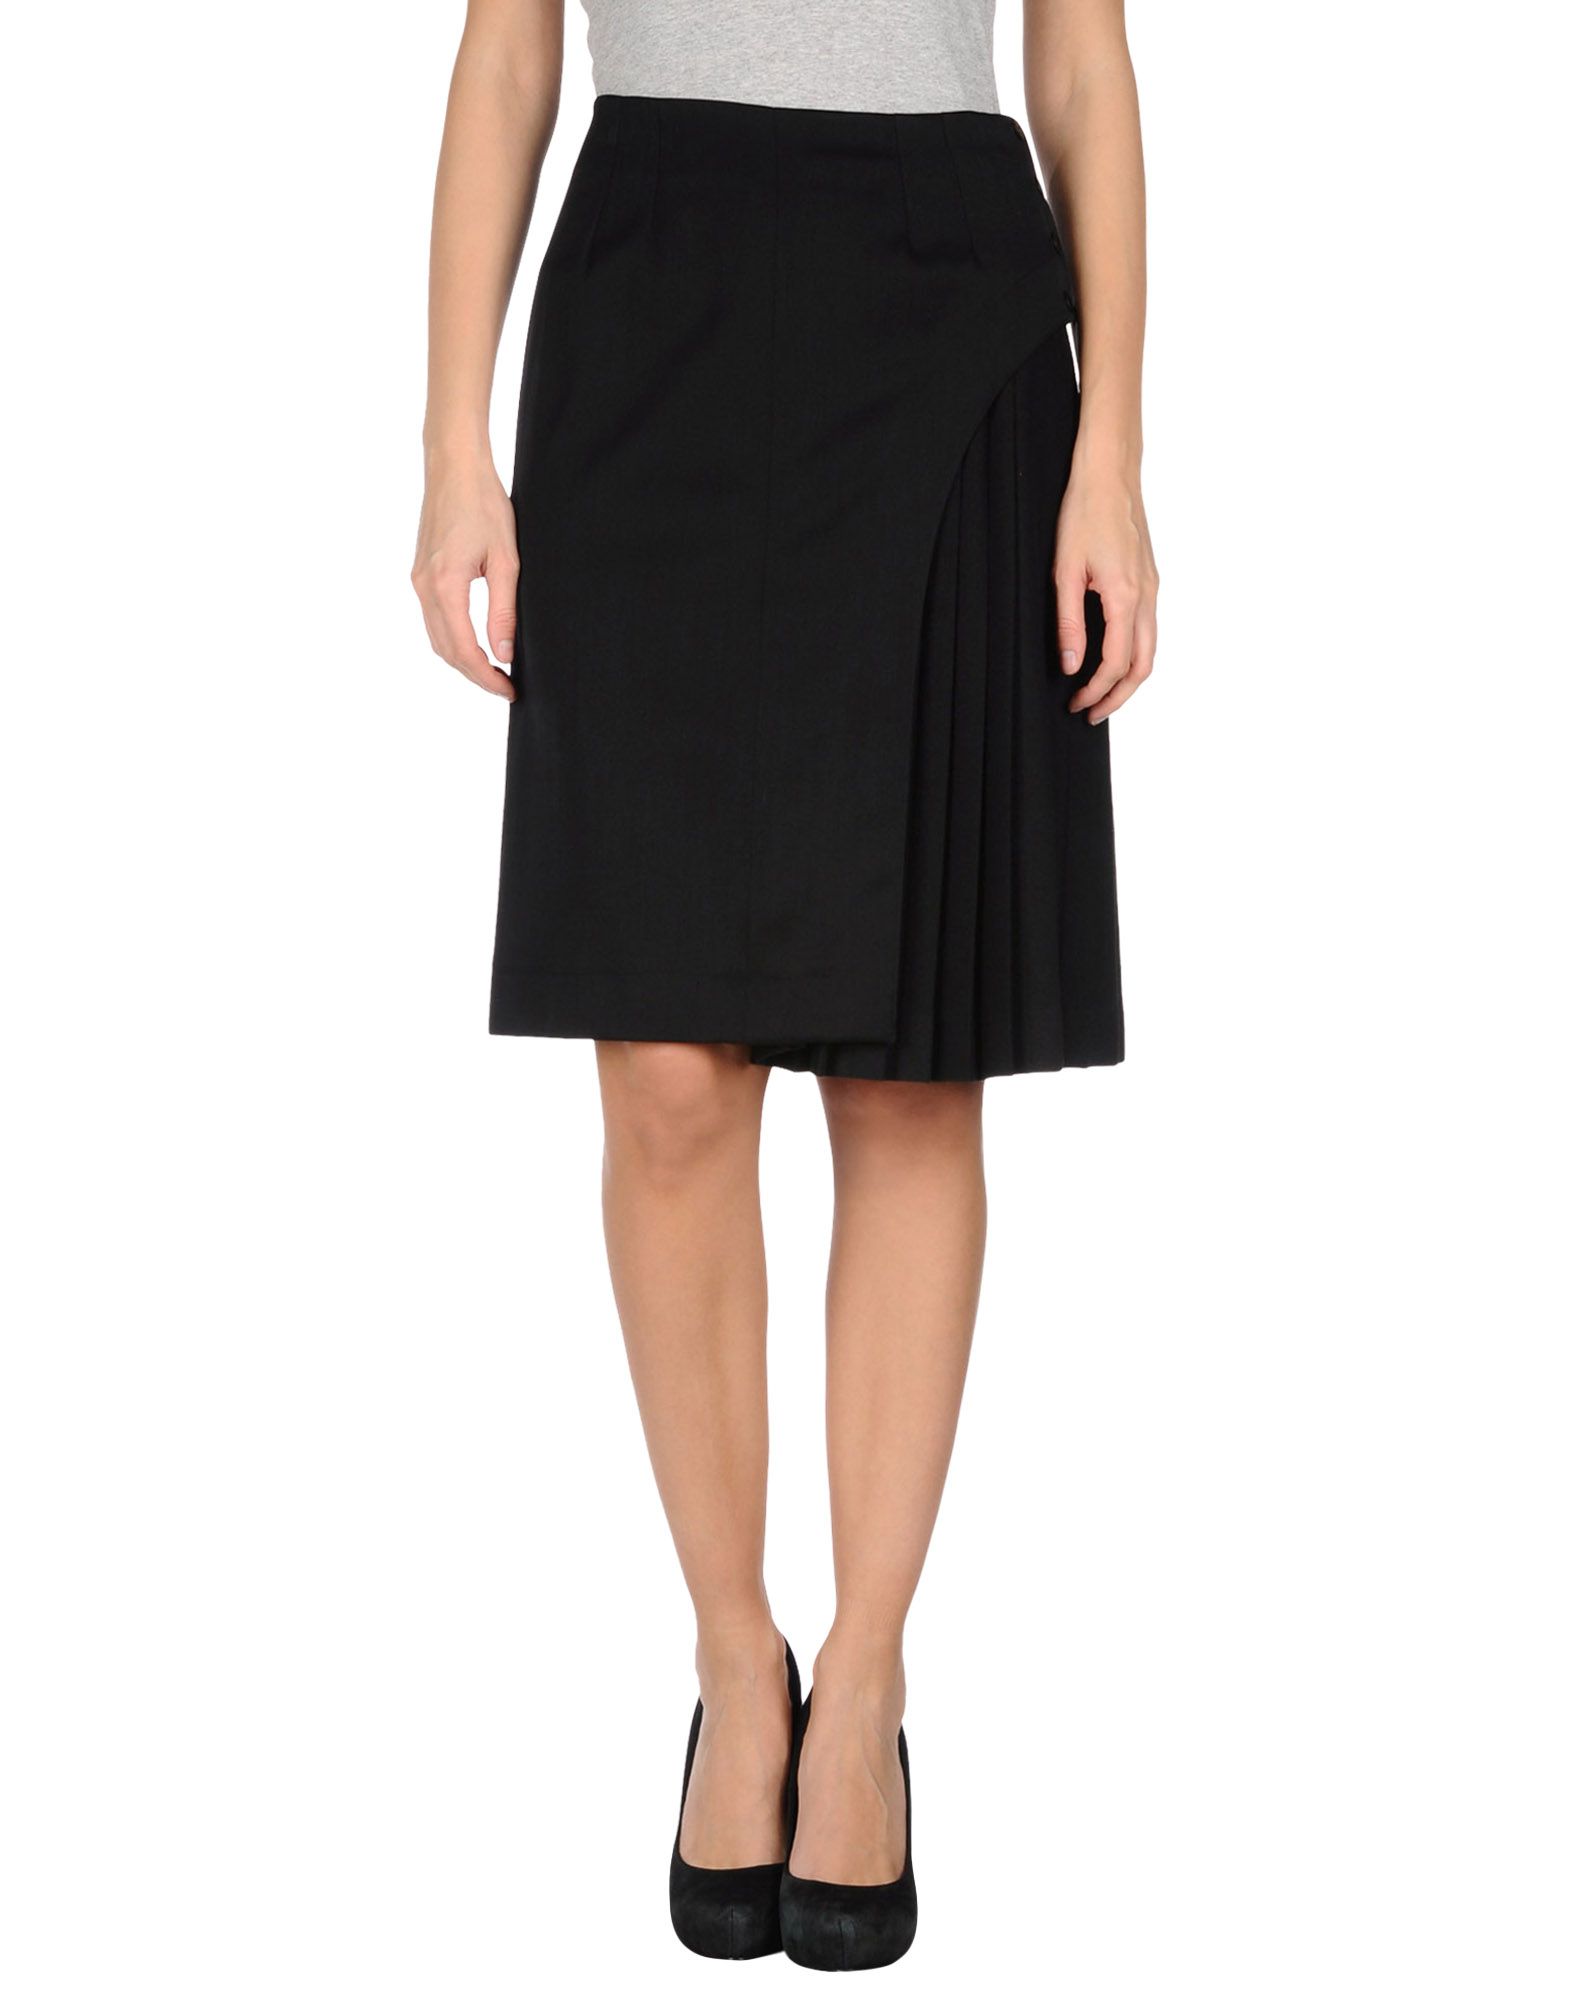 Fendi Knee Length Skirt in Black - Save 52% | Lyst